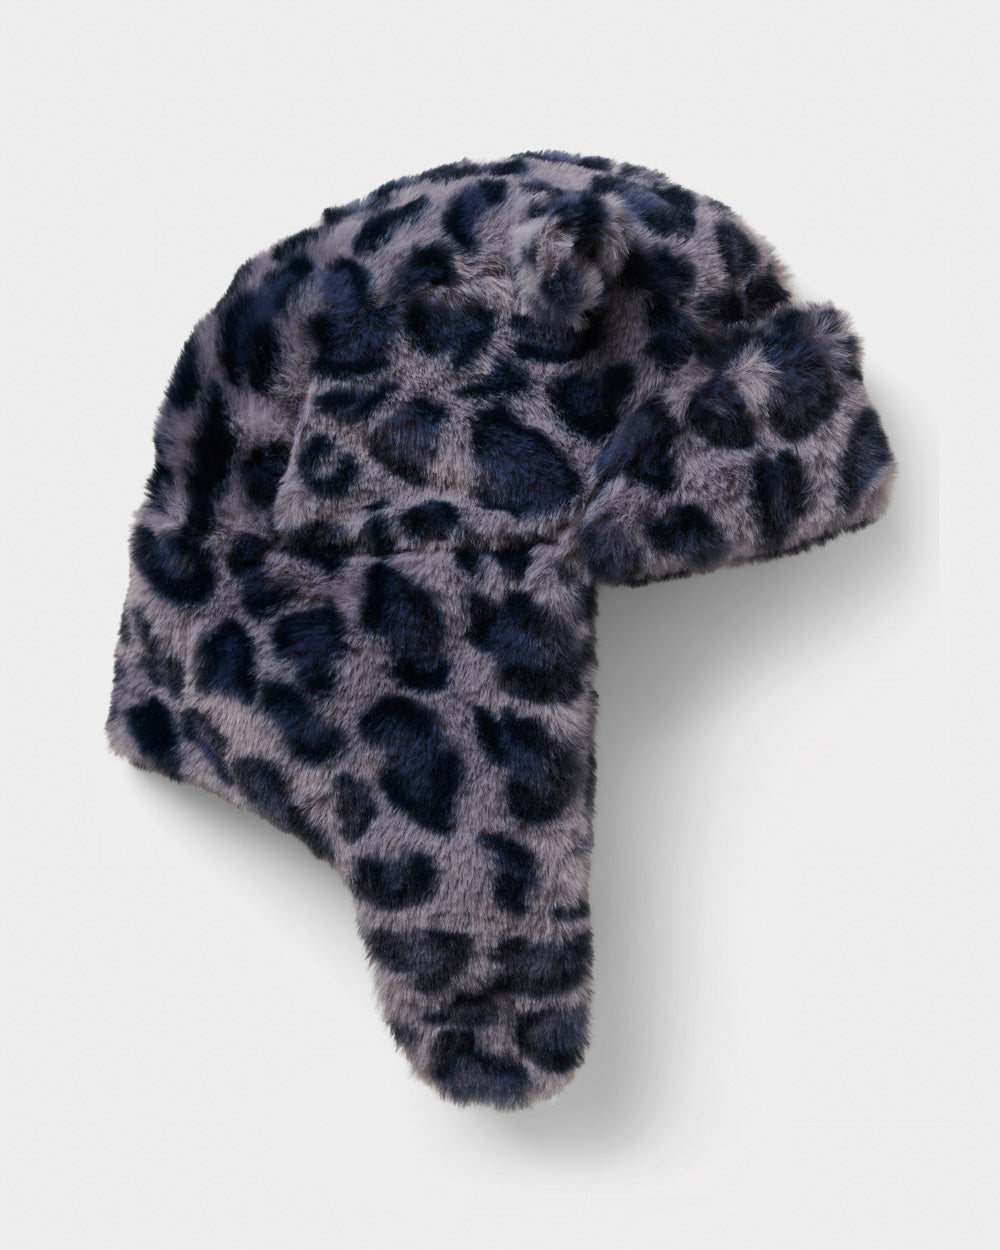 Faux Fur Leopard Deerstalker Hat - Small Stuff Accessories